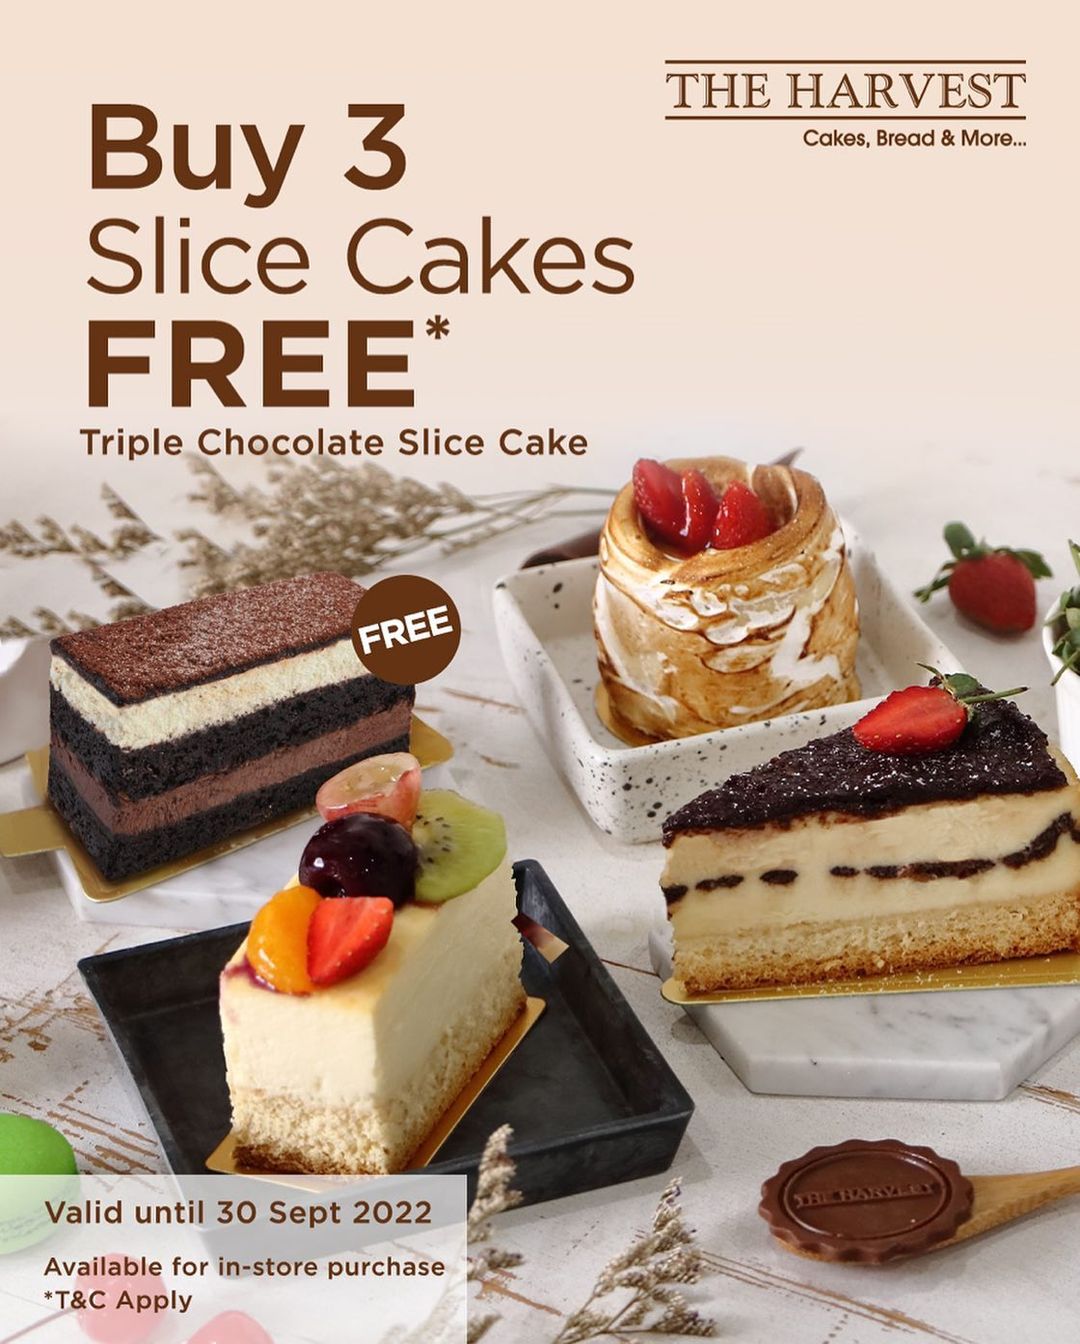 Beli 3 slice cakes dapat Triple Chocolate Slice Cake? Bisa banget dengan langsung belanja di store The Harvest! Nggak boleh banget kelewatan karena promo ini berlaku hingga 30 September 2022 ya Cake Lovers.